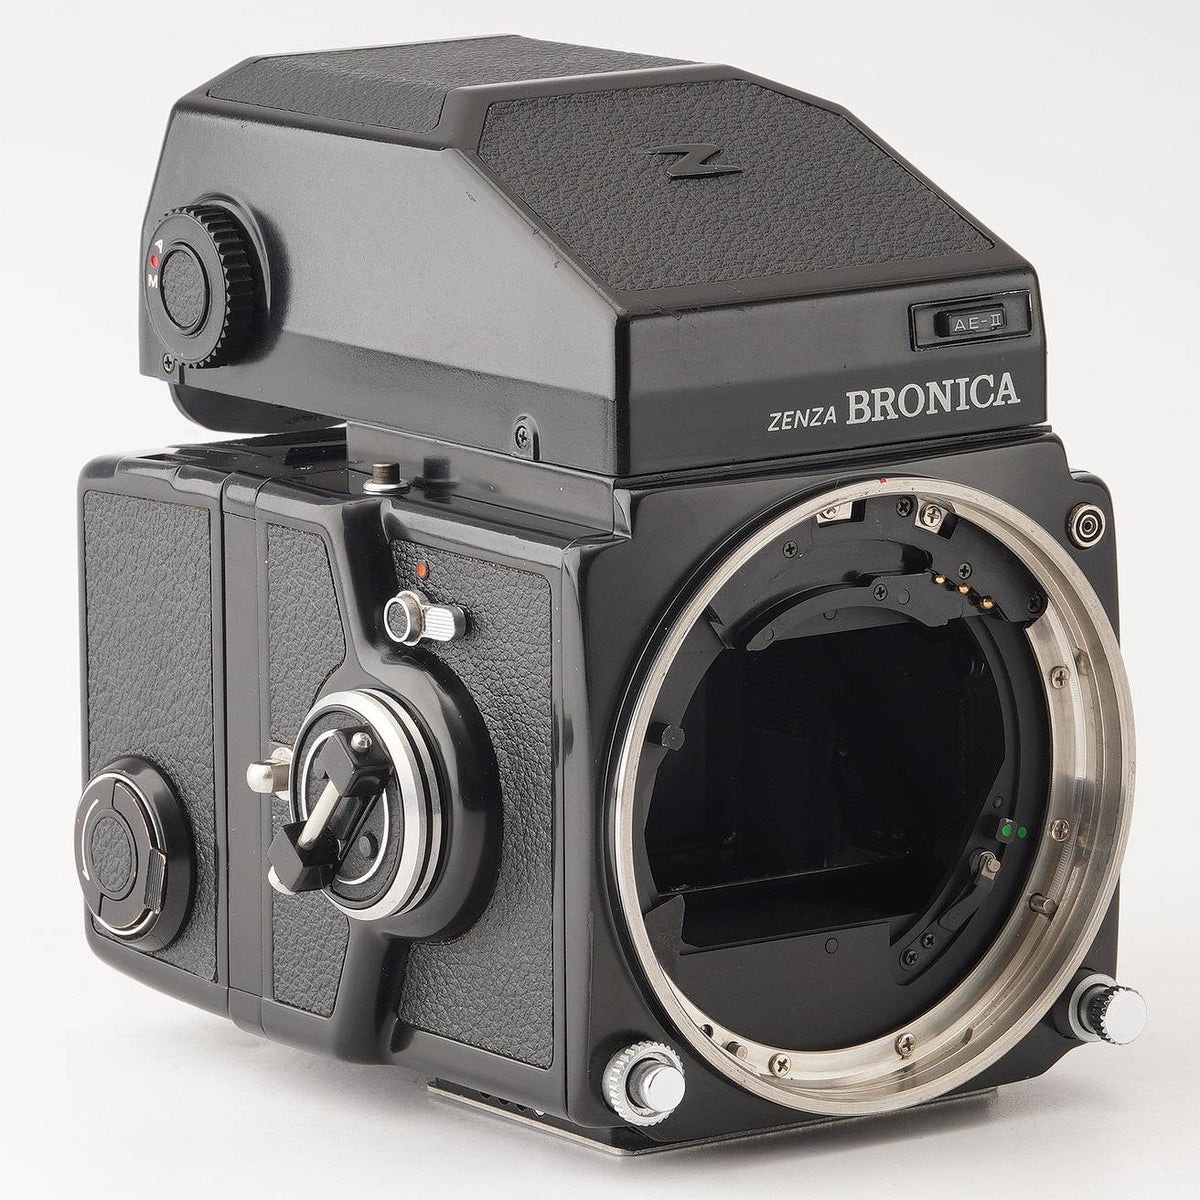 ブロニカ Zenza Bronica ETRS / ZENZANON MC 75mm F2.8 – Natural Camera / ナチュラルカメラ